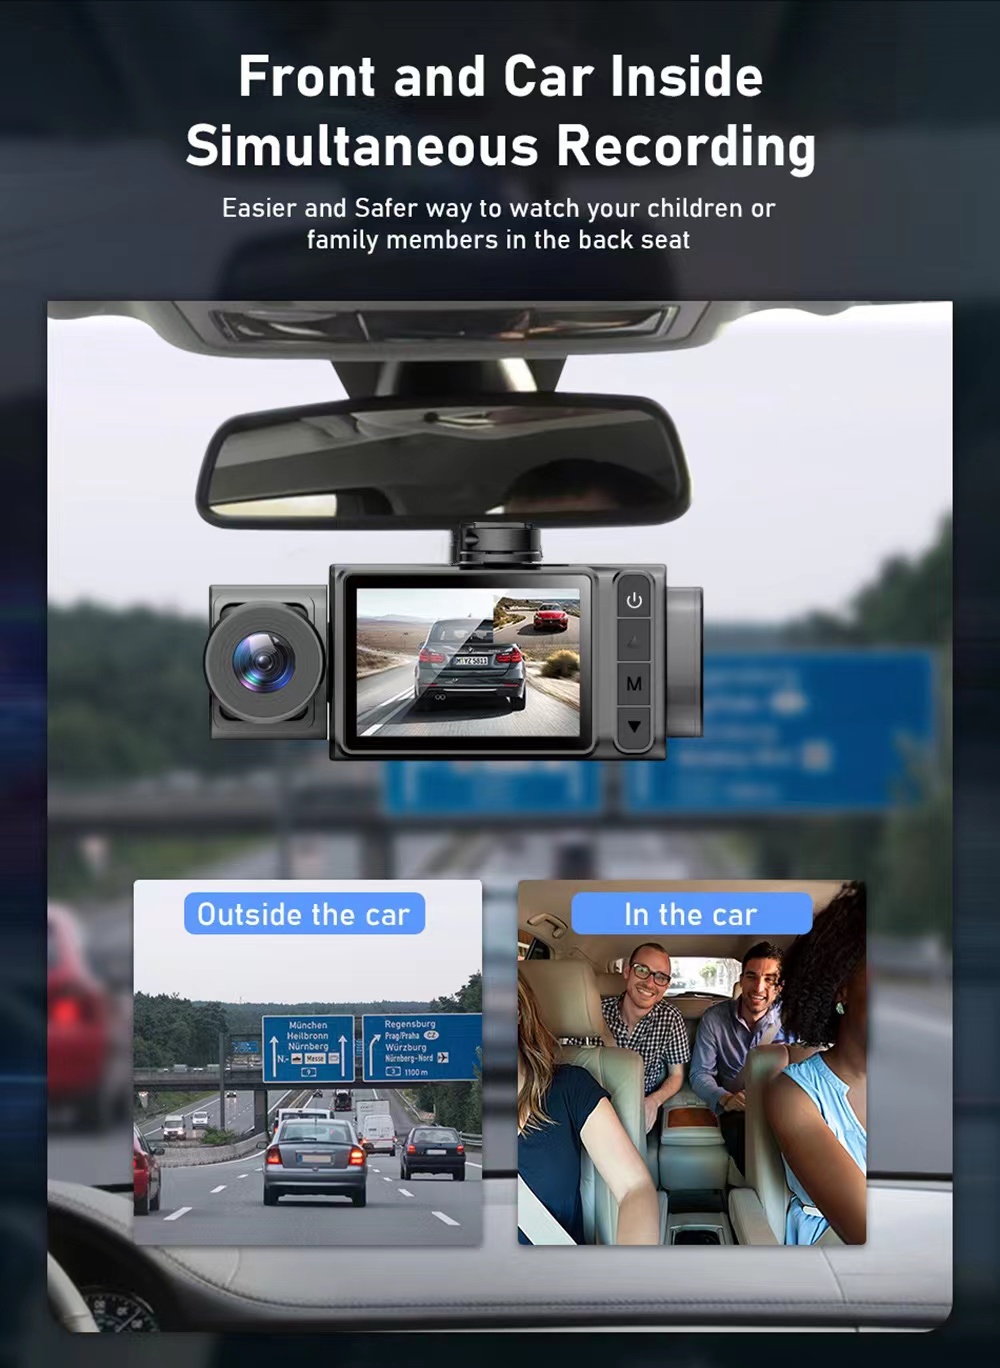 2 tum HD 1080p 3 -lins S11 CAR DVR Video Recorder Dash Cam Bakkamera 130 graders vidvinkel Ultraupplösningsfront med interiör med bakre kamera rörelsedetektering